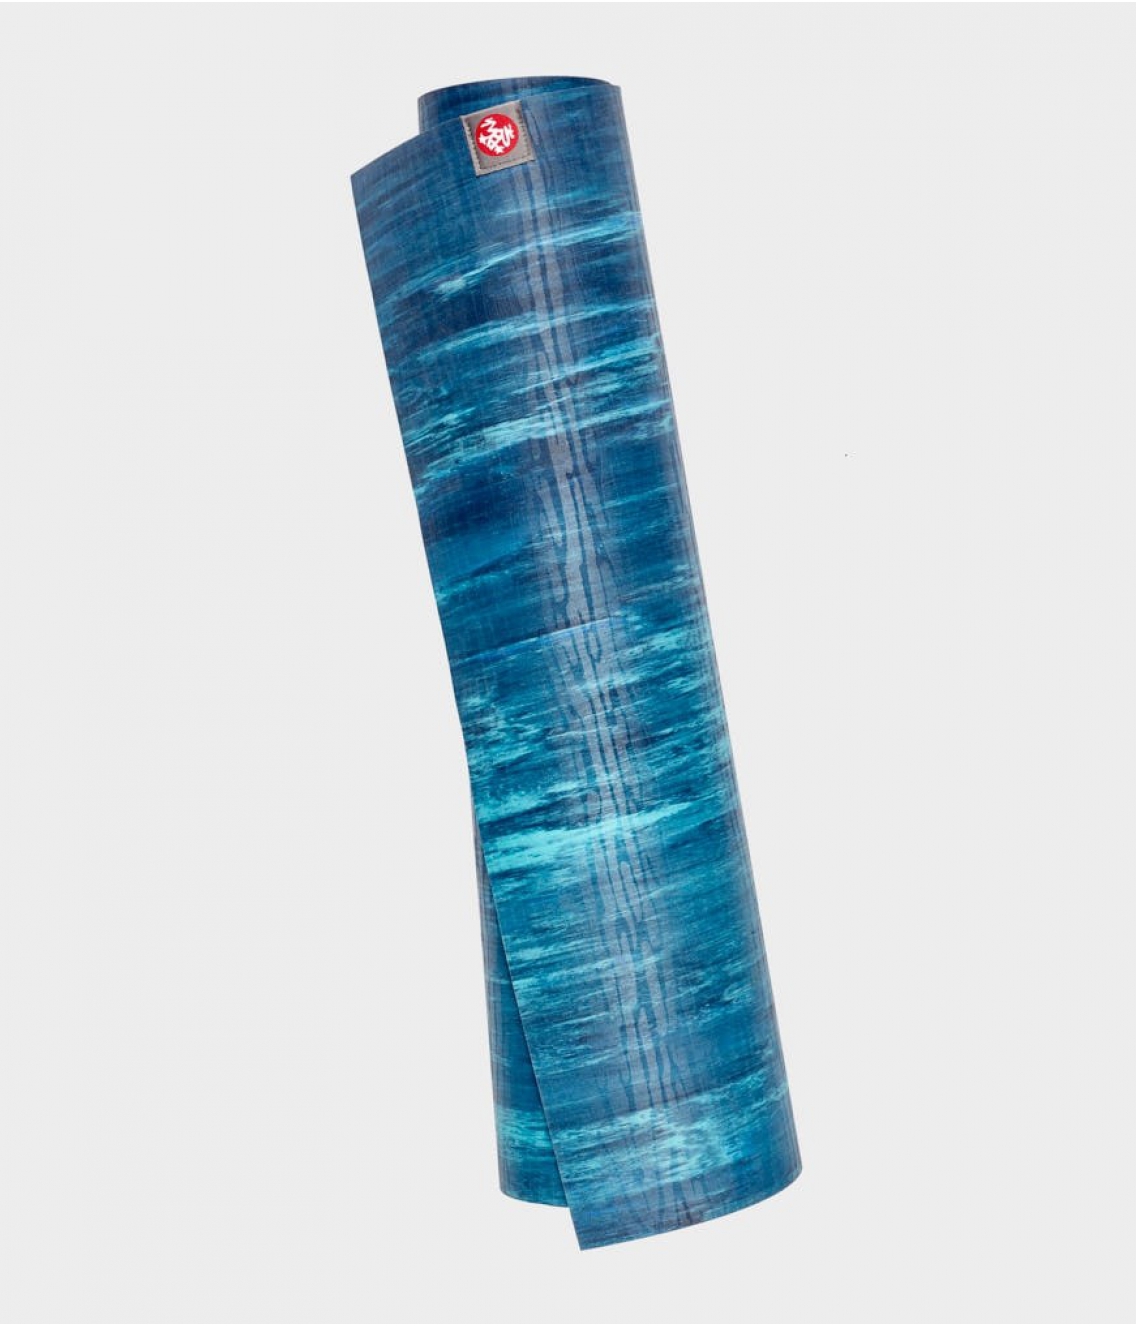 Профессиональный каучуковый коврик для йоги Manduka eKO 180*66*0,5 см - Pacific Blue Marbled (Limited Edition)